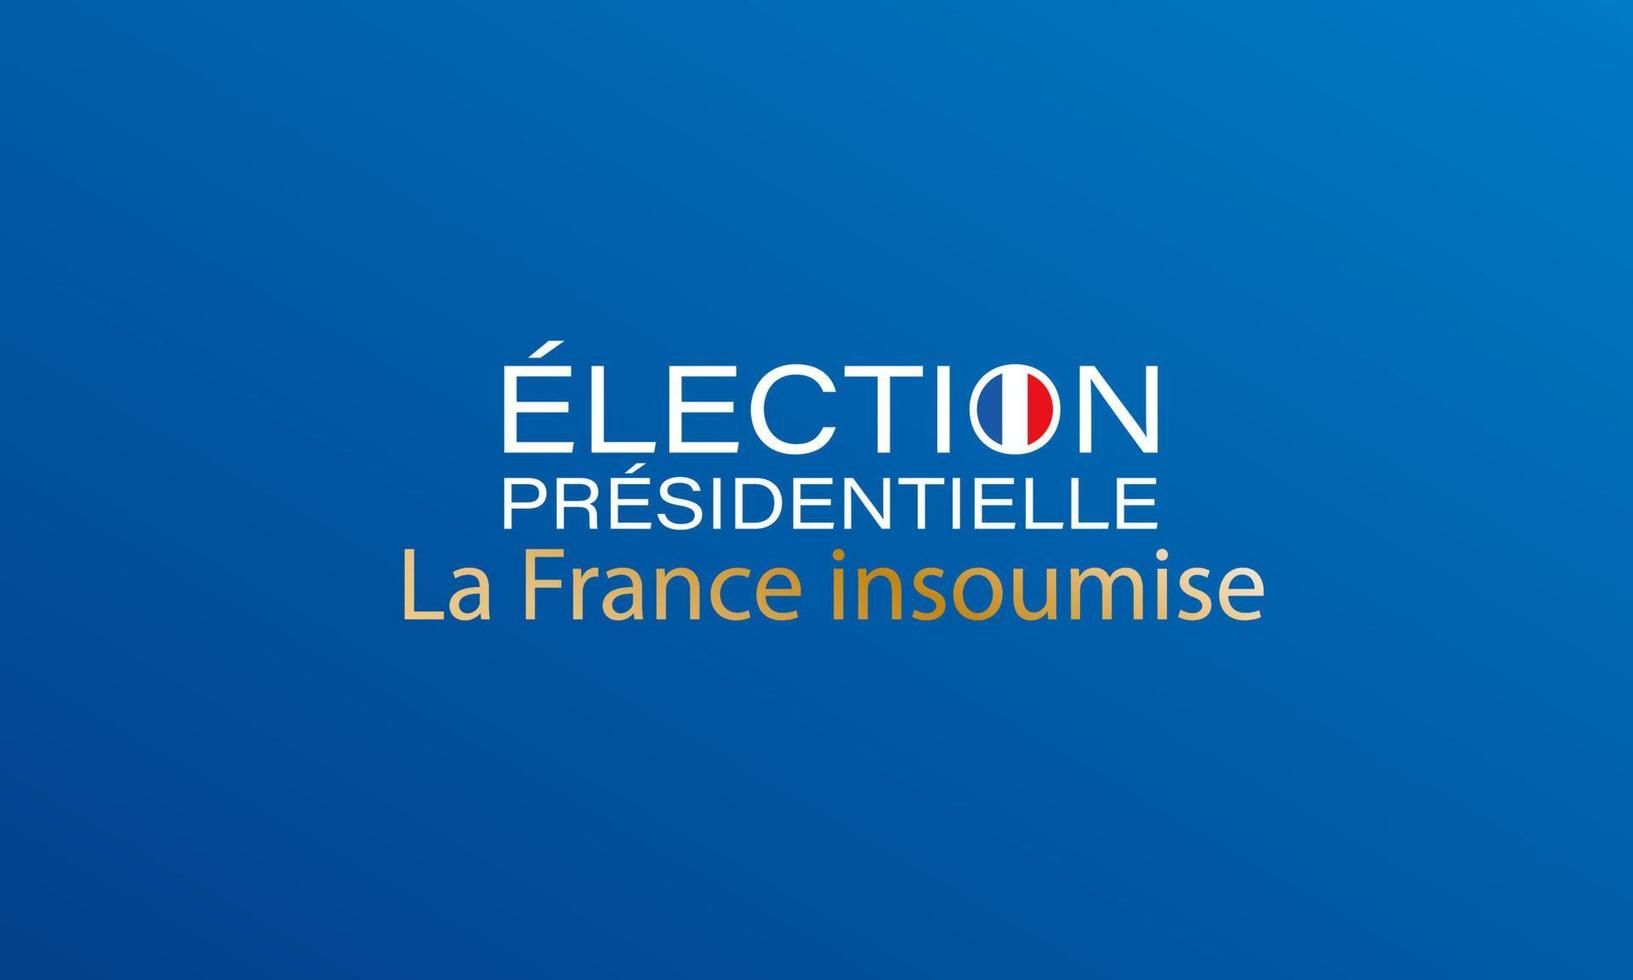 elecciones presidenciales en el icono del logo de francia con bandera francesa y nombre de partido vector